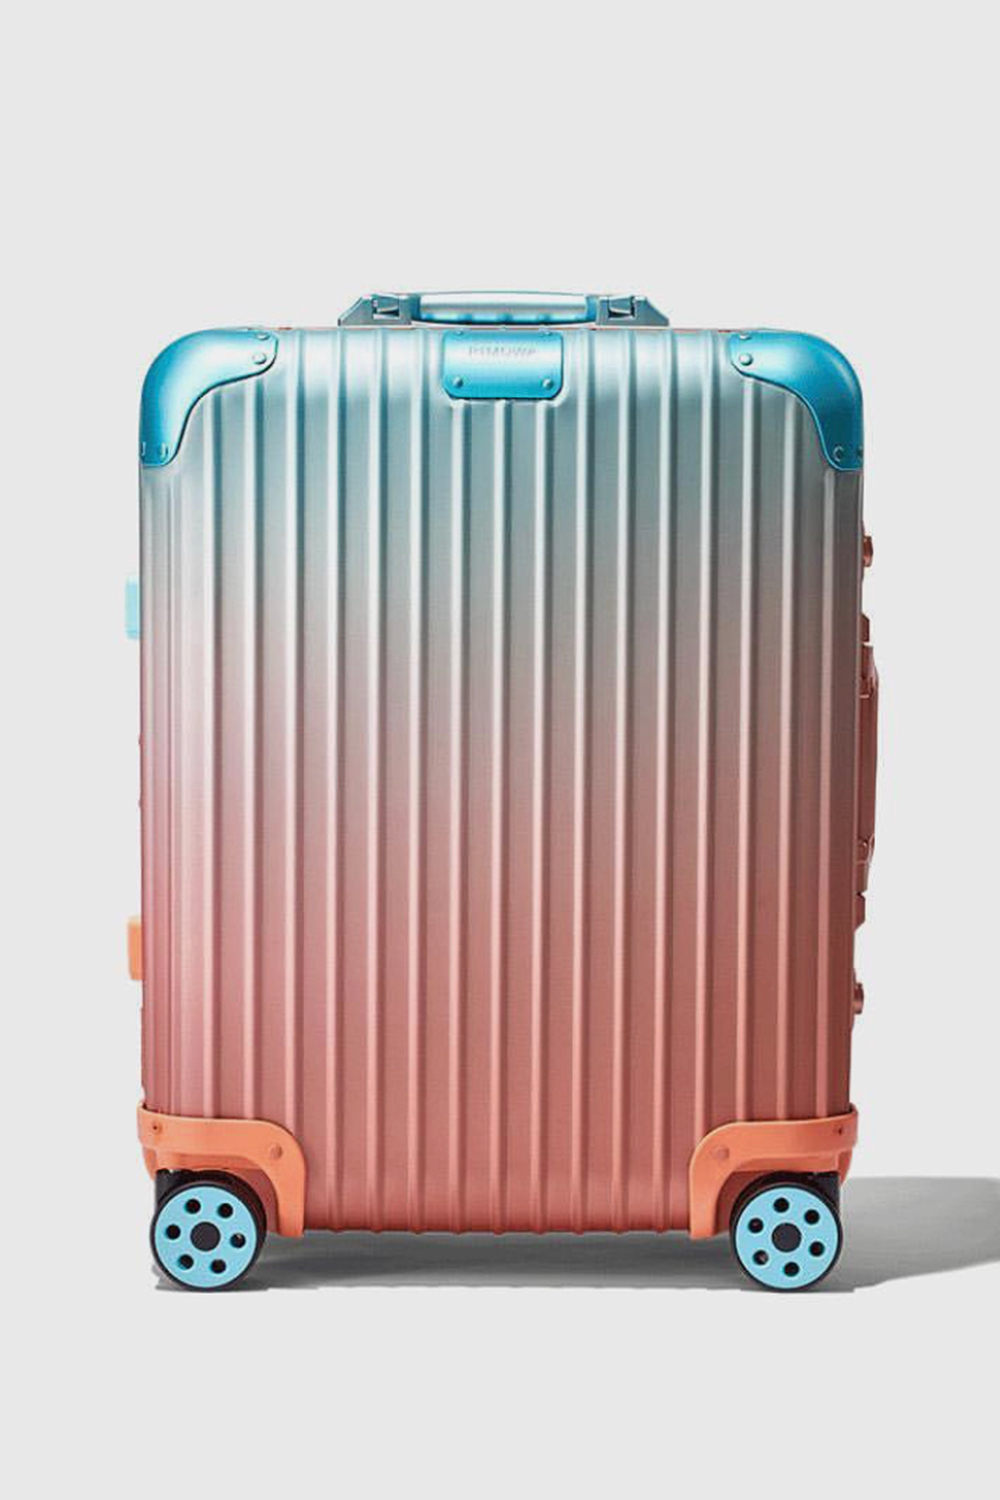 alex israel rimowa luggage